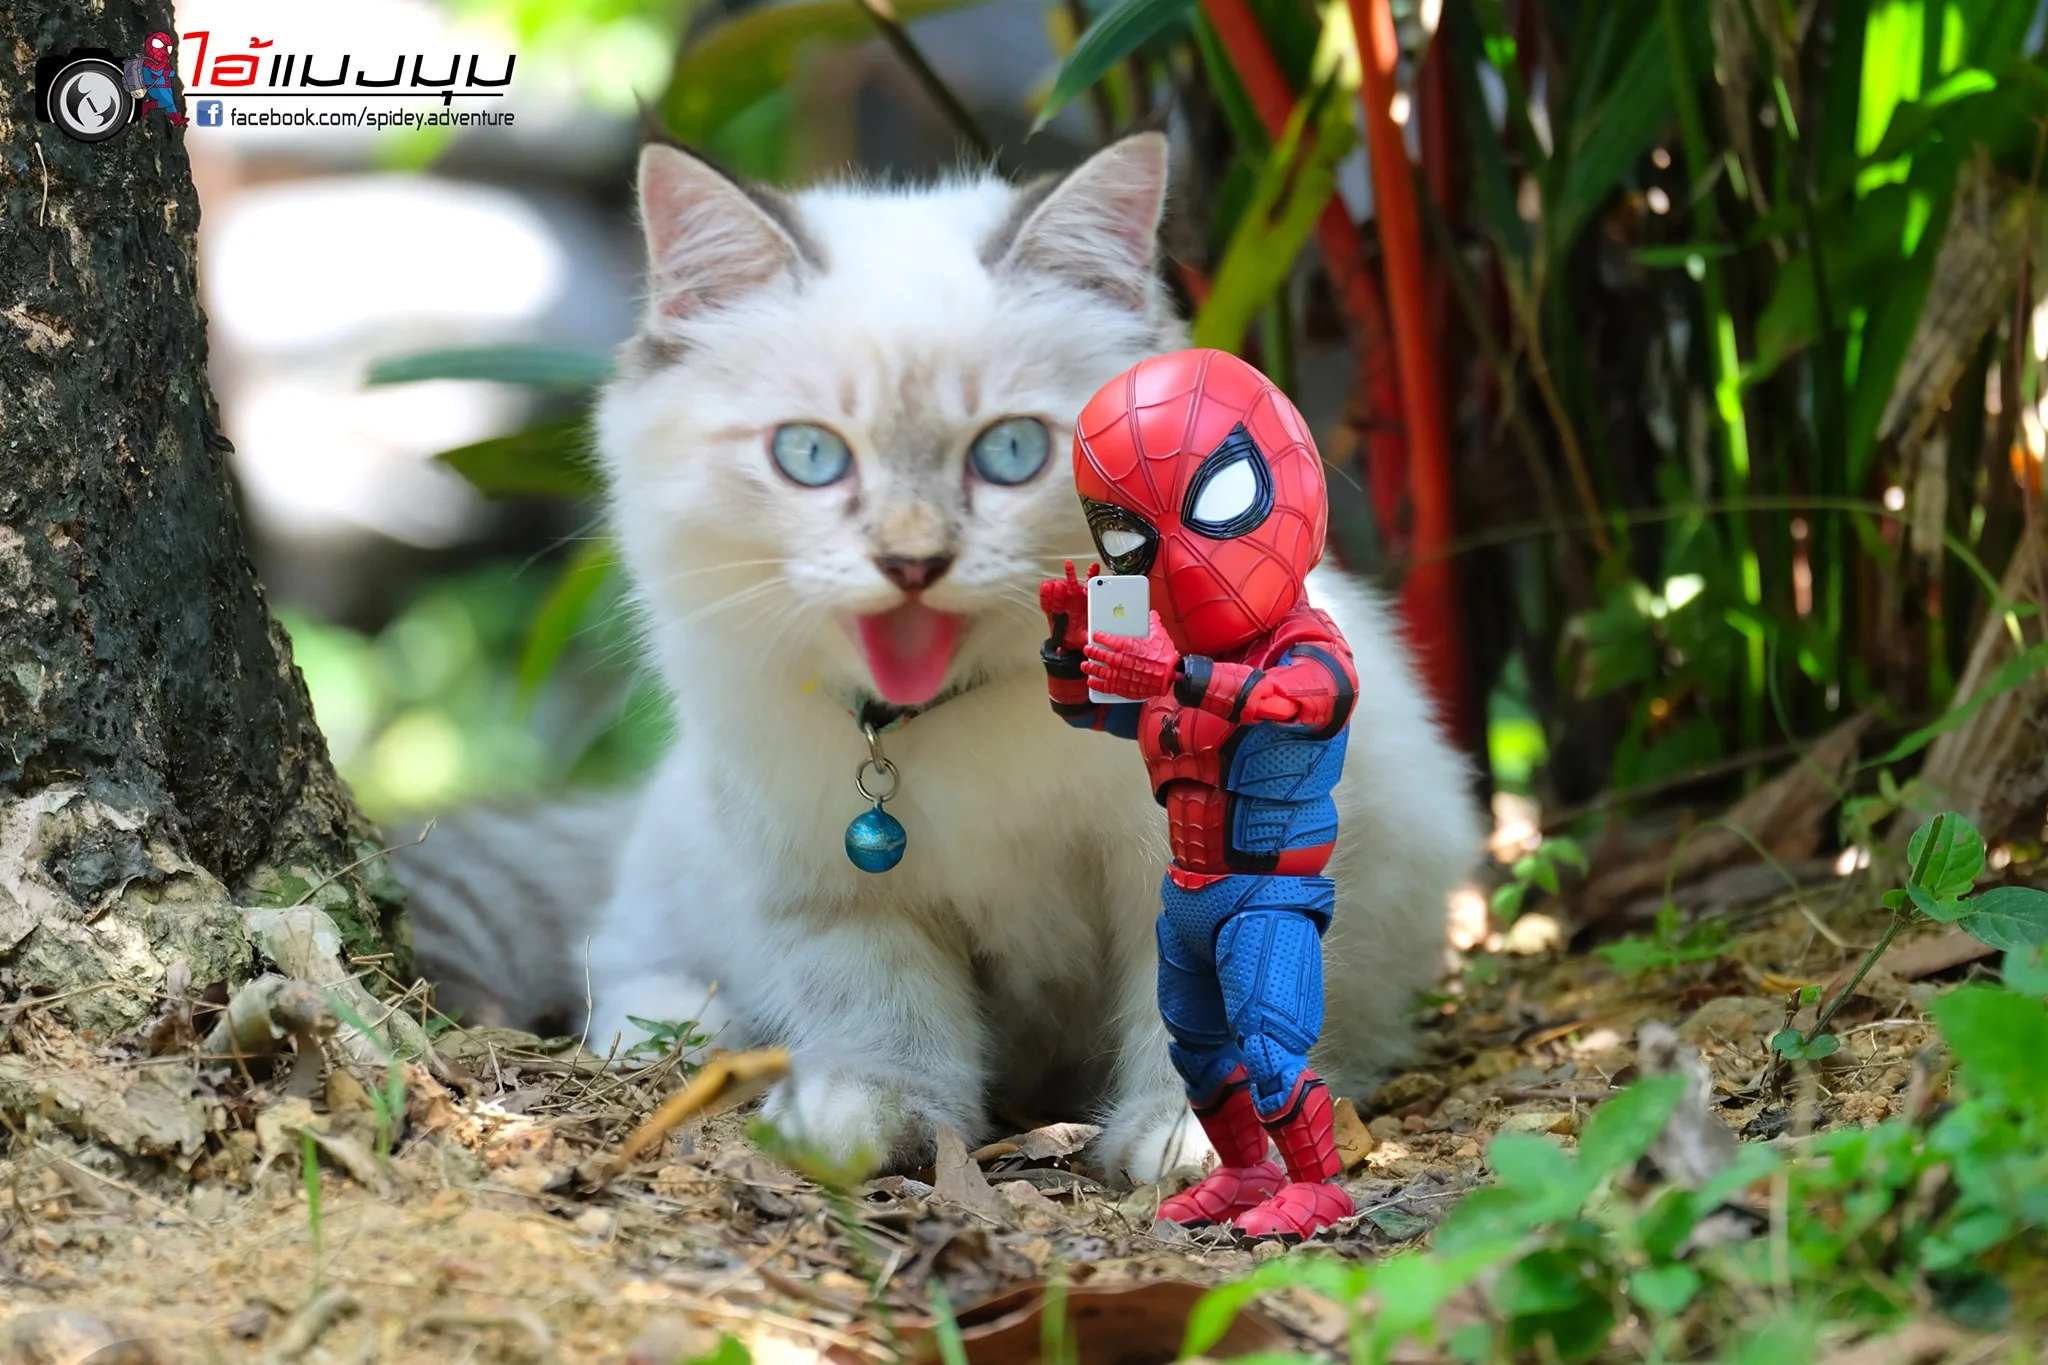 Художник додав до фото з котиками зображення Людини-павука – це виглядає дуже смішно - фото 459374